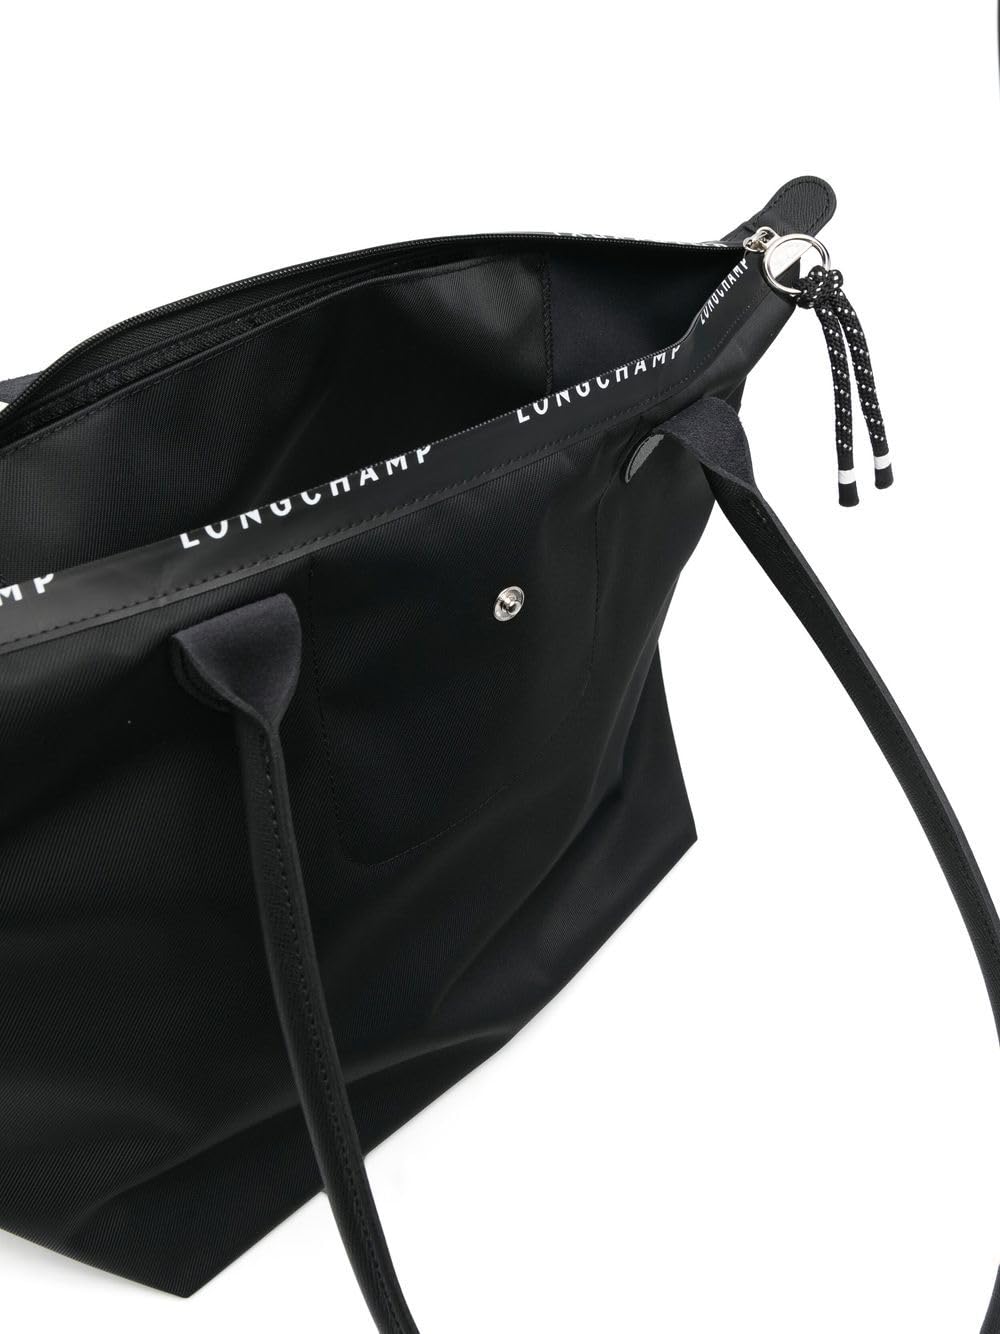 Longchamp Le Pliage Energy Large Tote Shoulder Bag, Black, Canvas